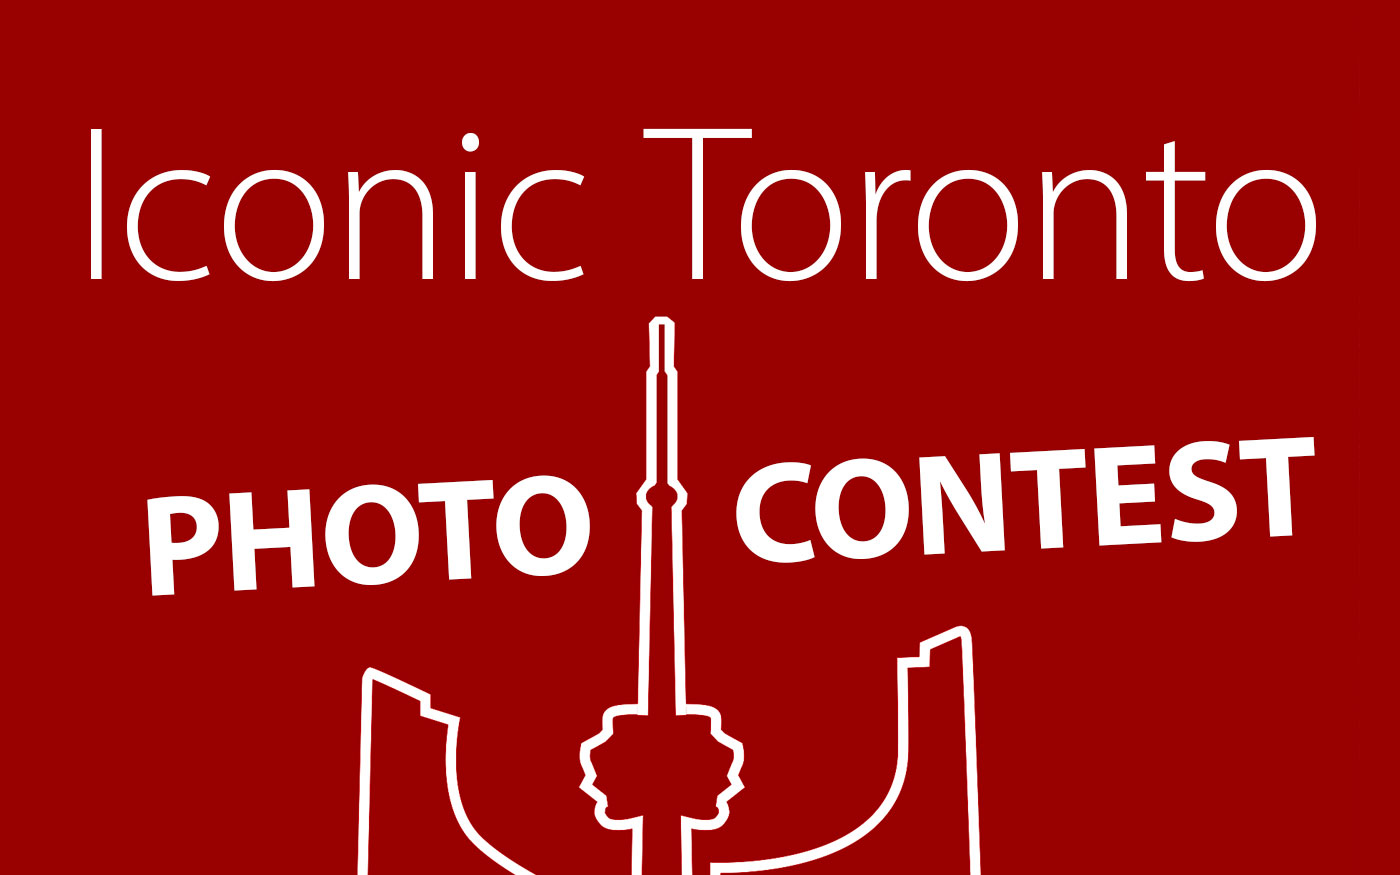 Iconic Toronto Photo Contest wide